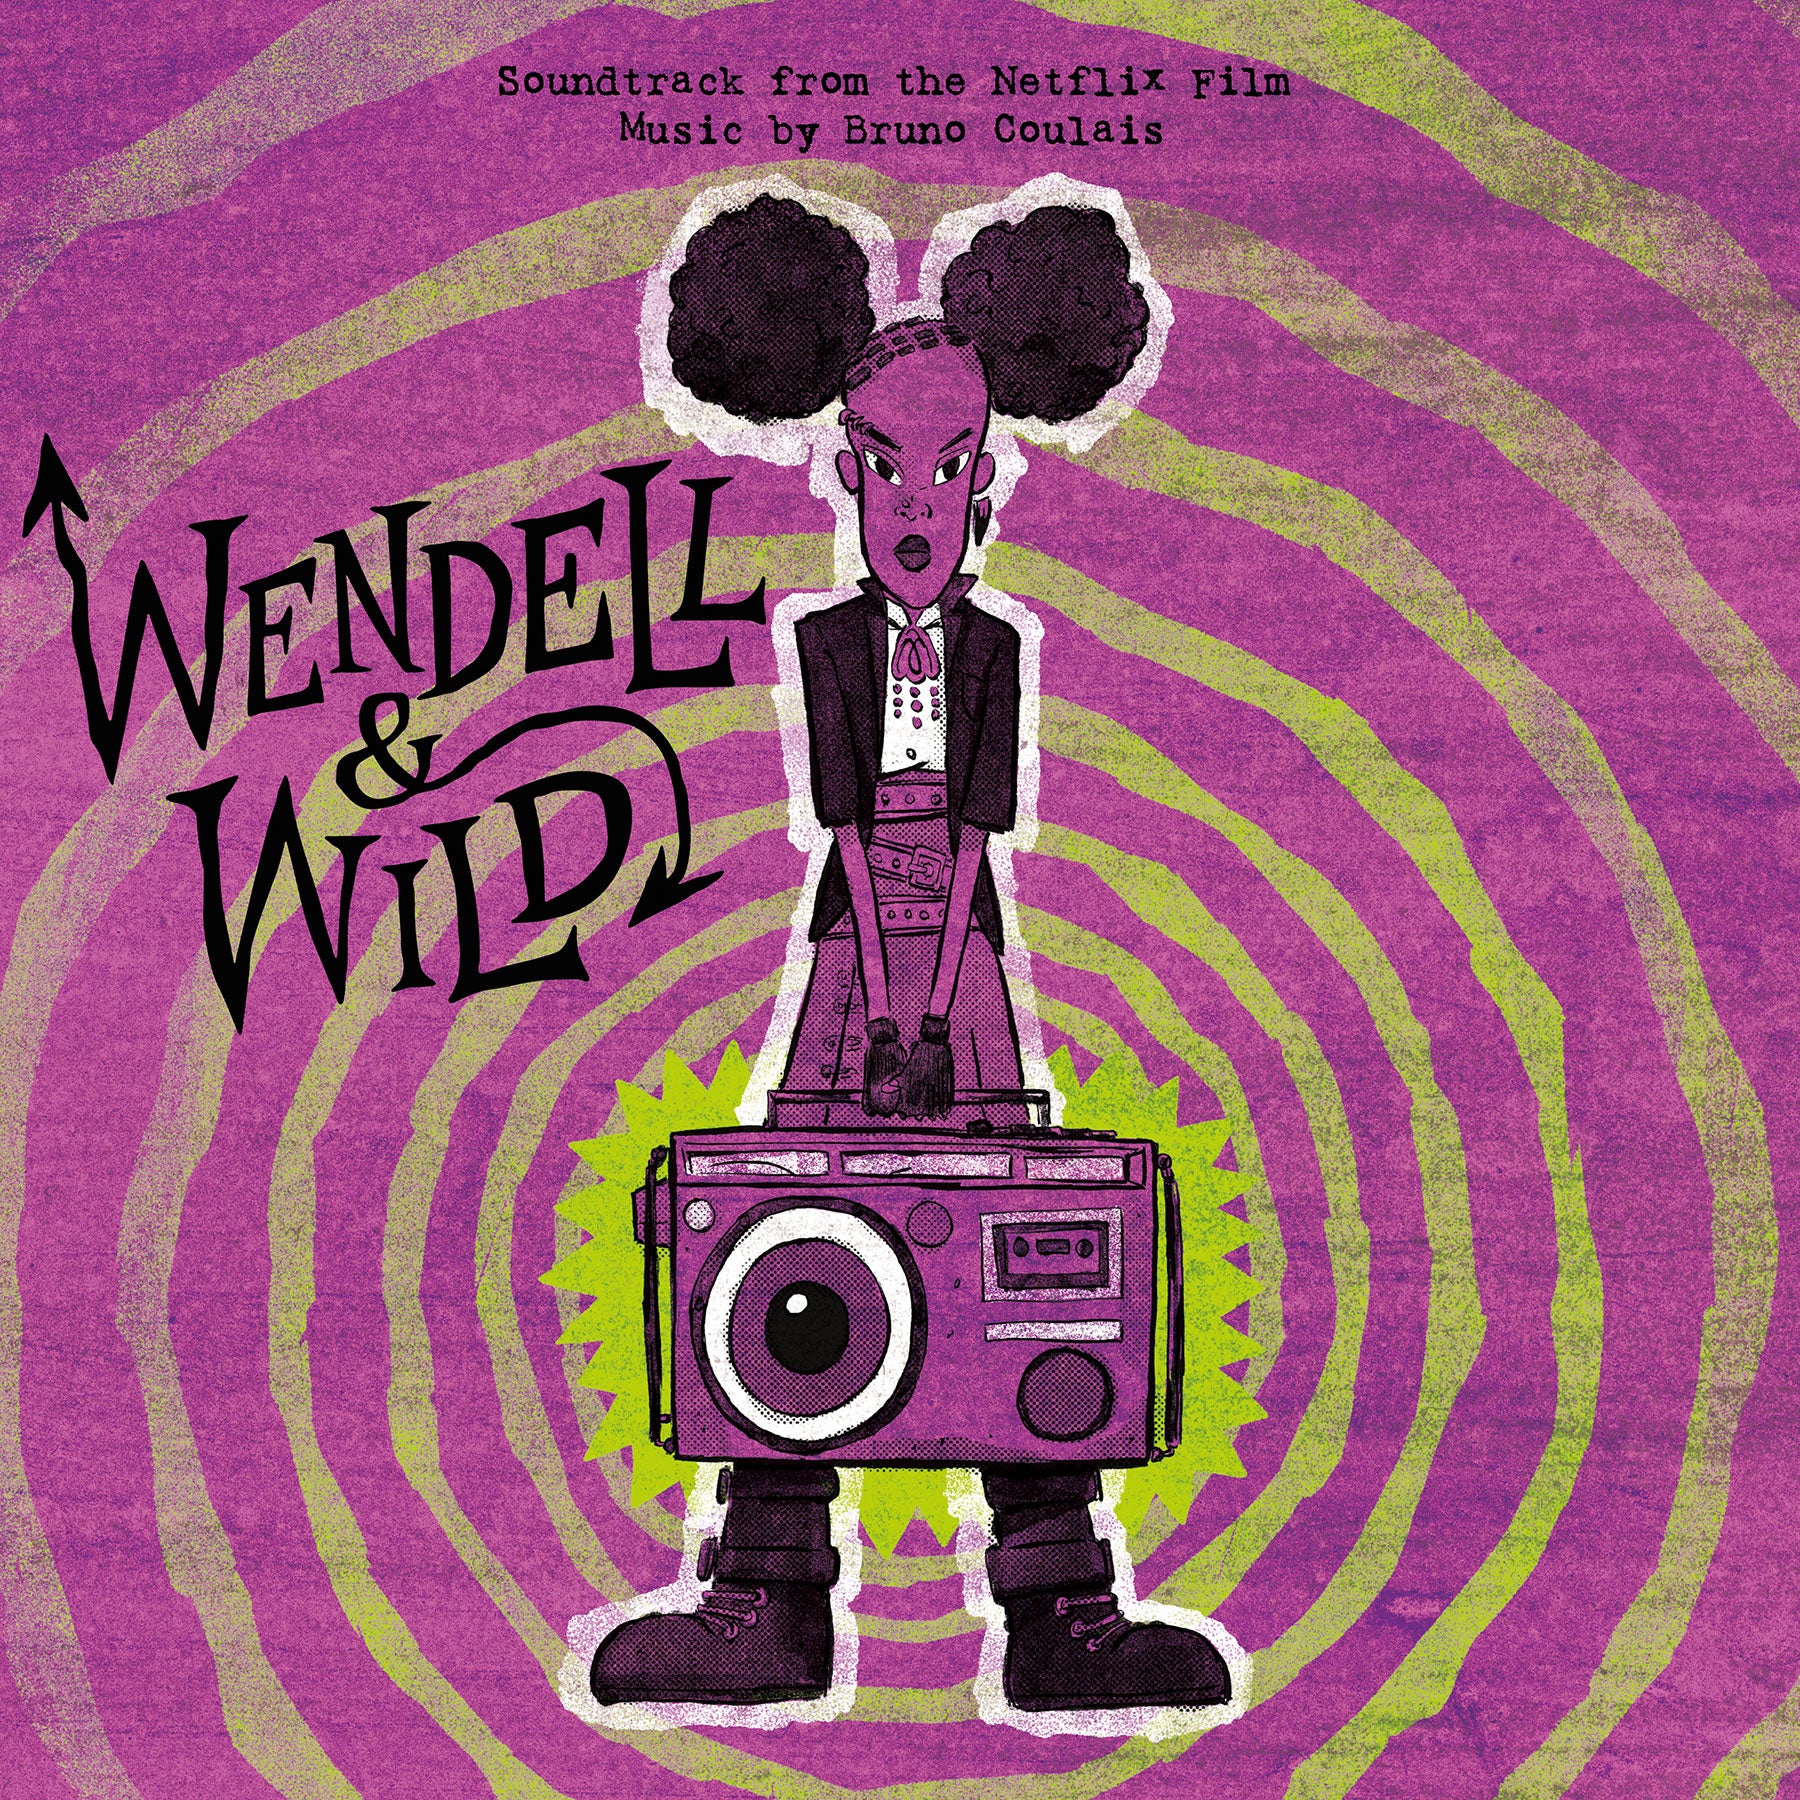 Wendell & Wild – Waxwork Records